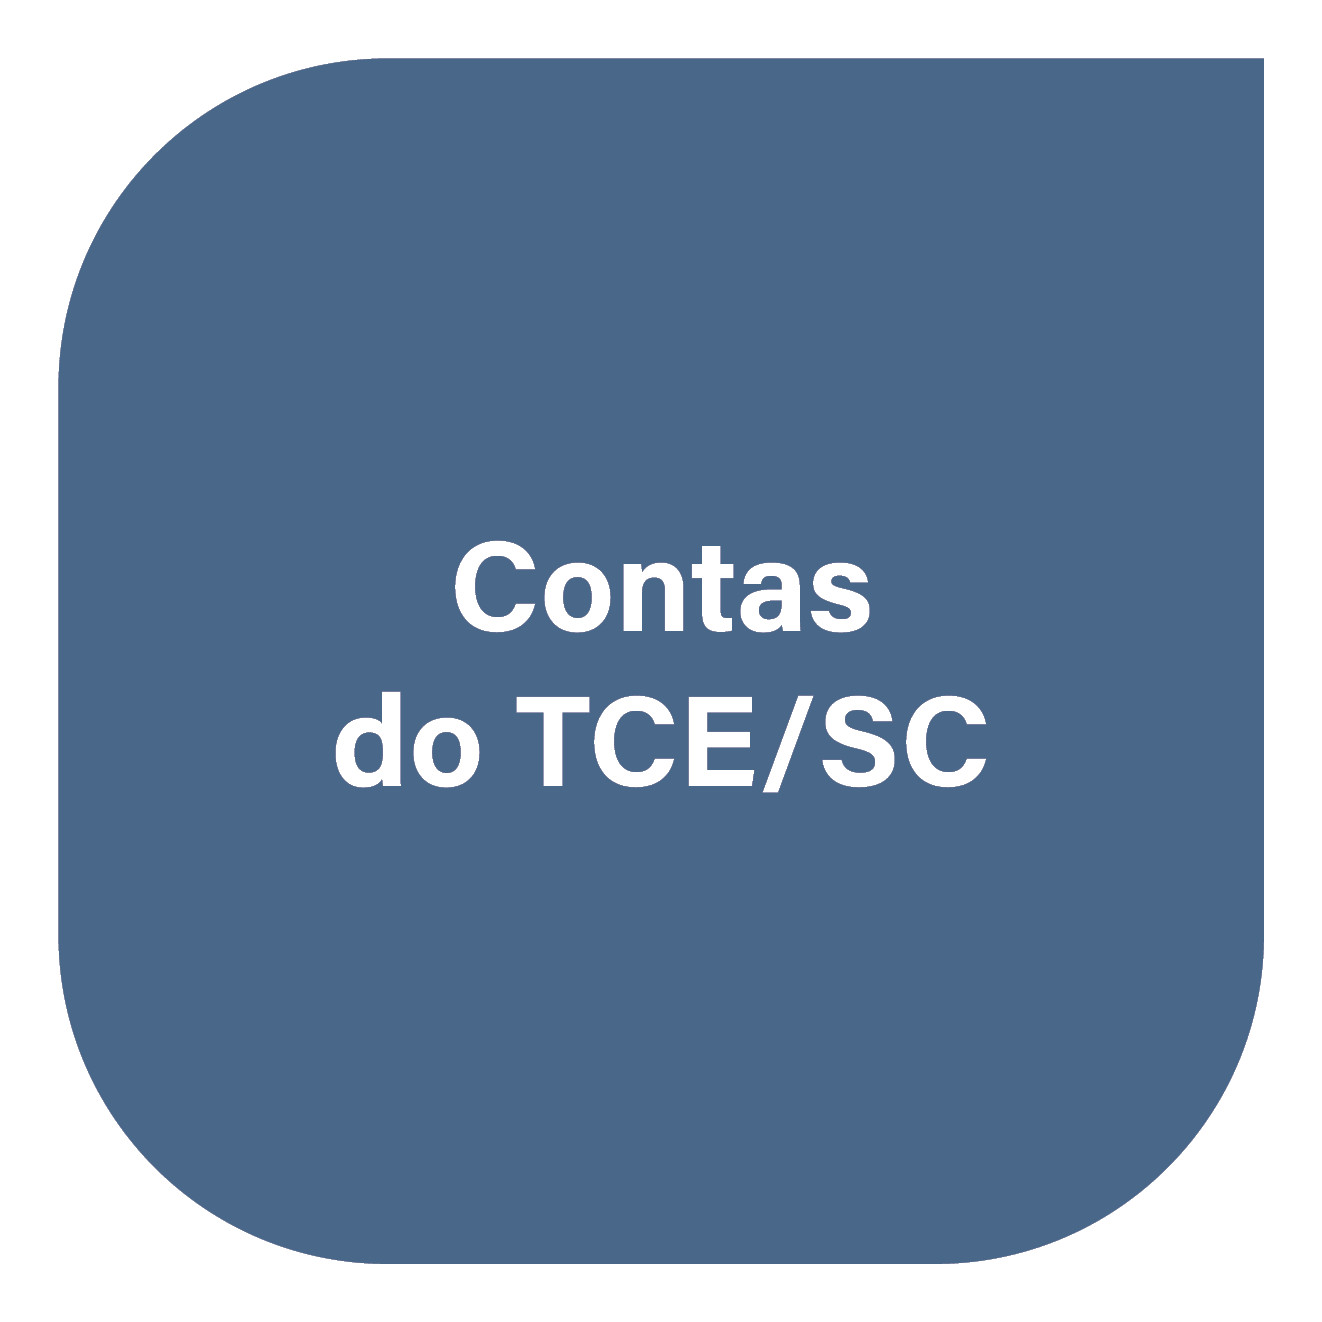 Contas do TCE/SC